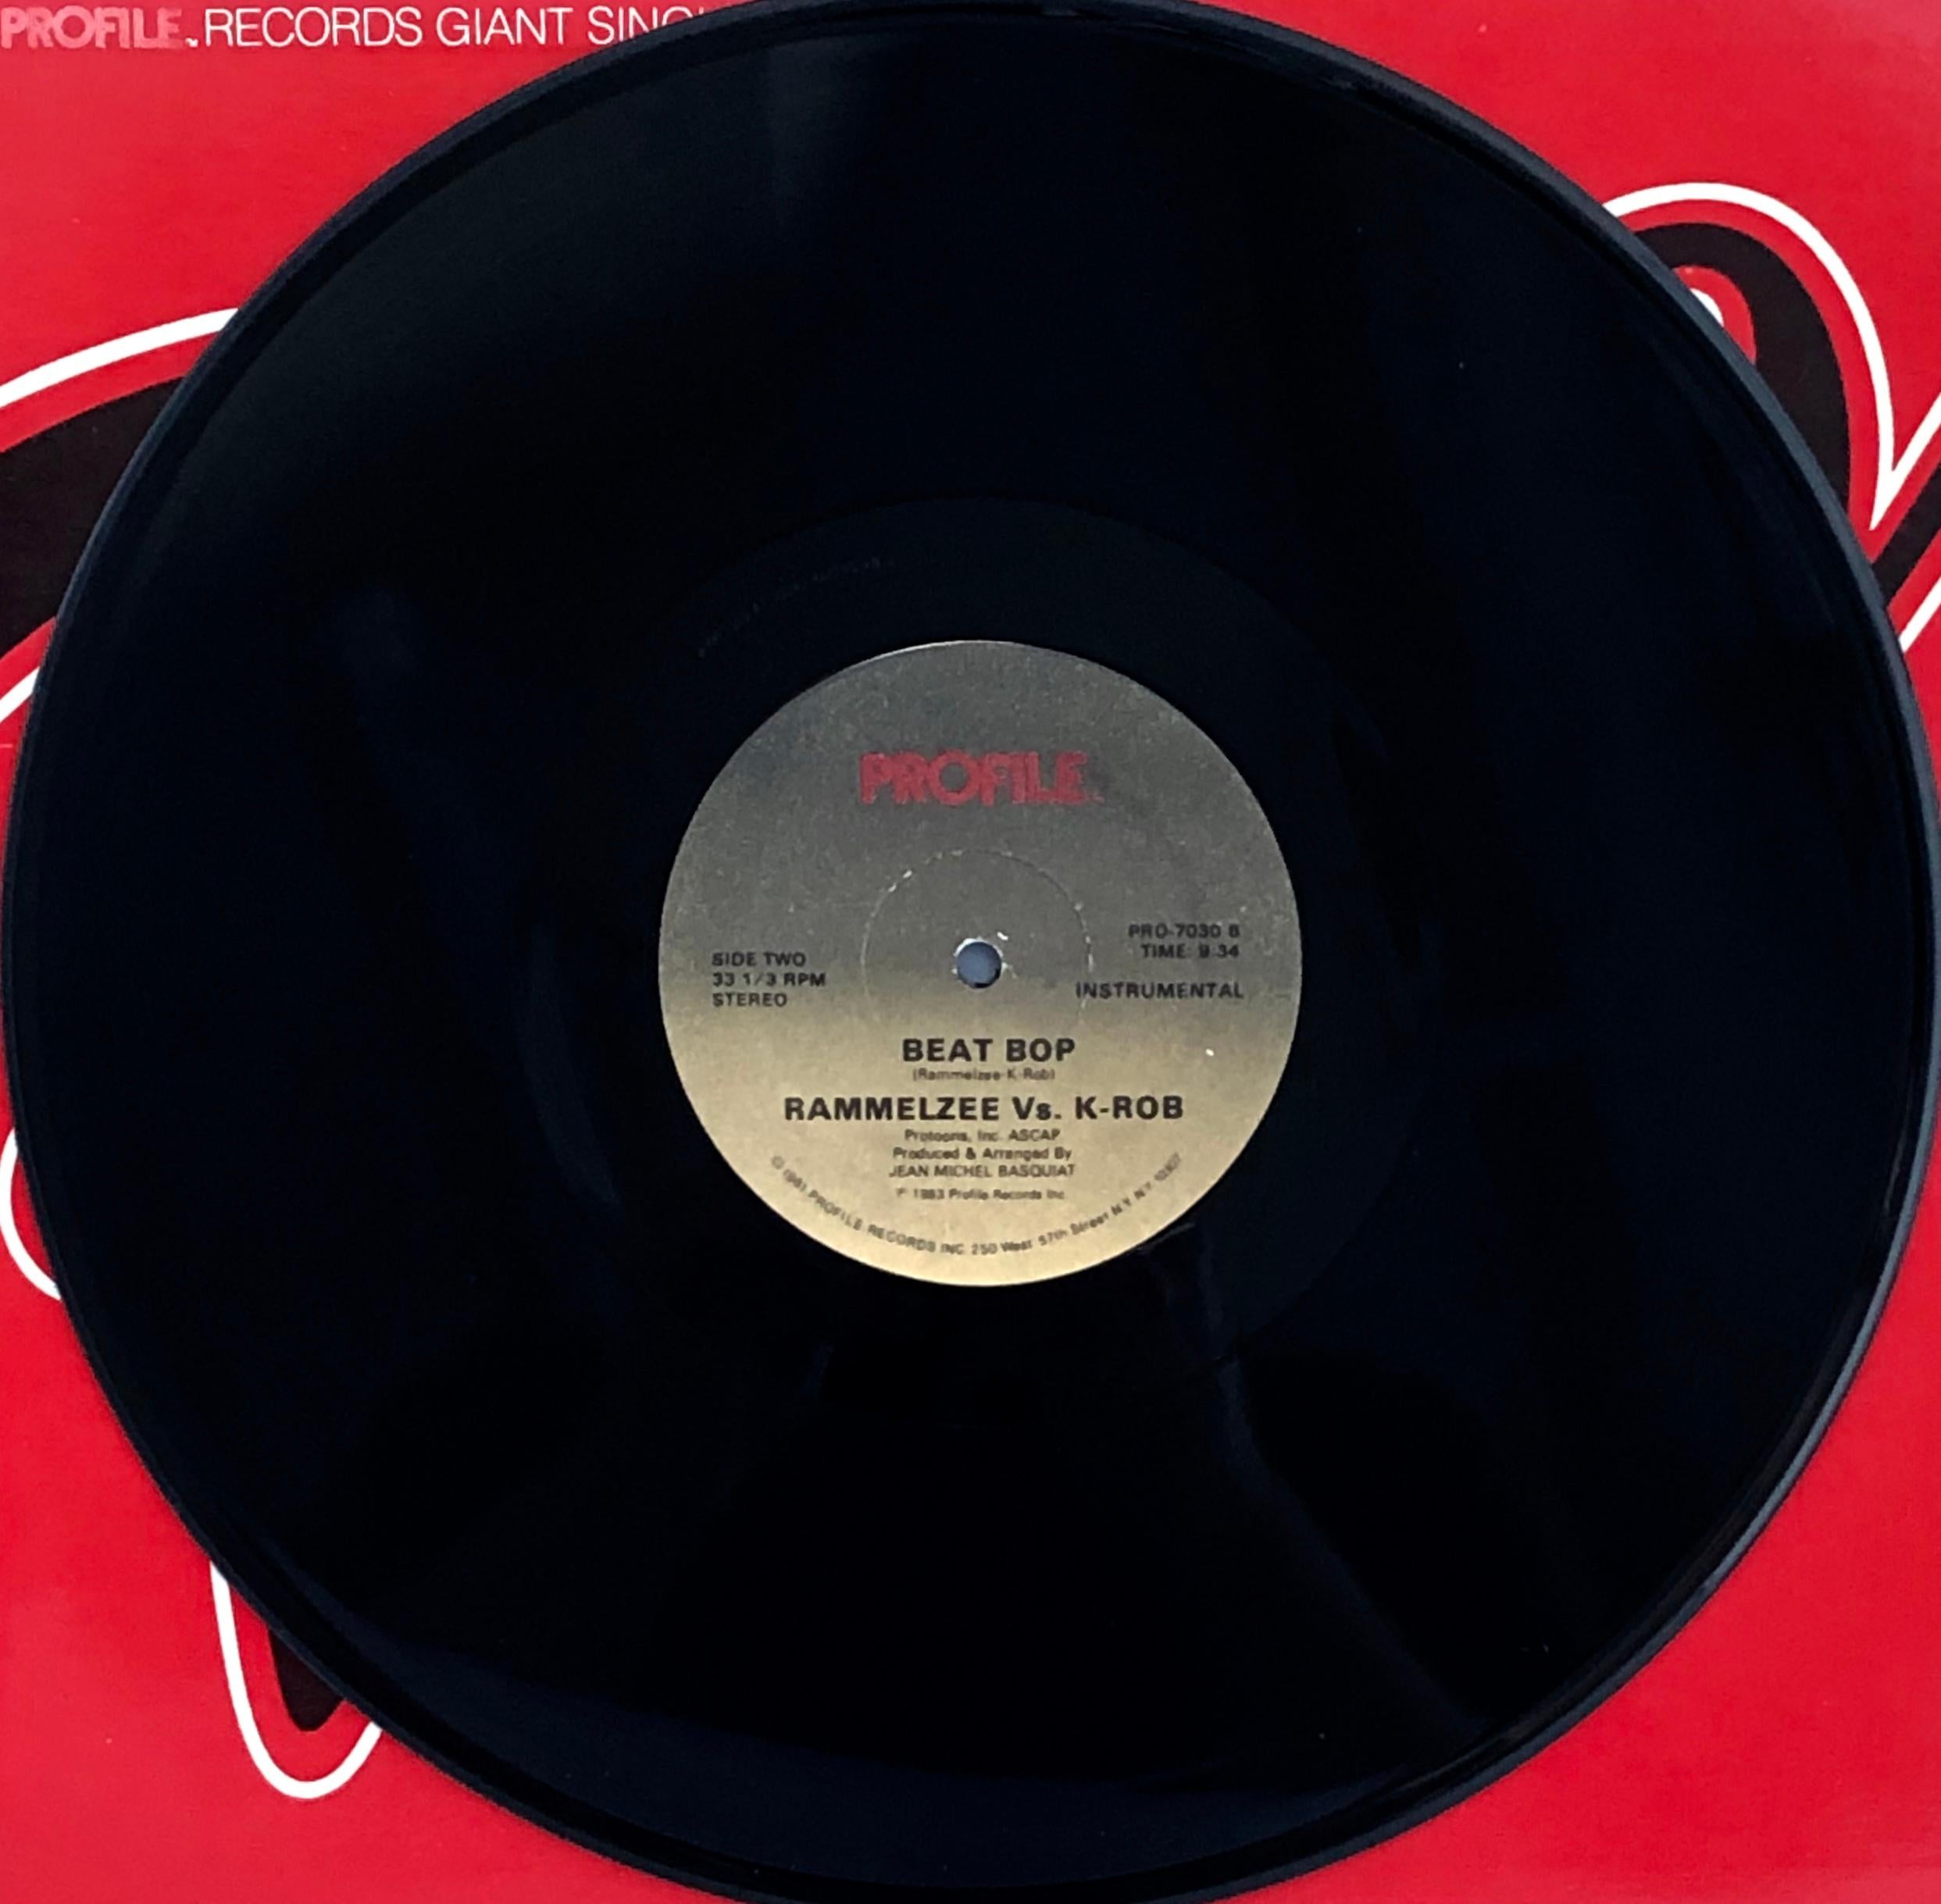 Rammellzee vs. K-Rob
Beat Bop, 1983
Vinyle, 12